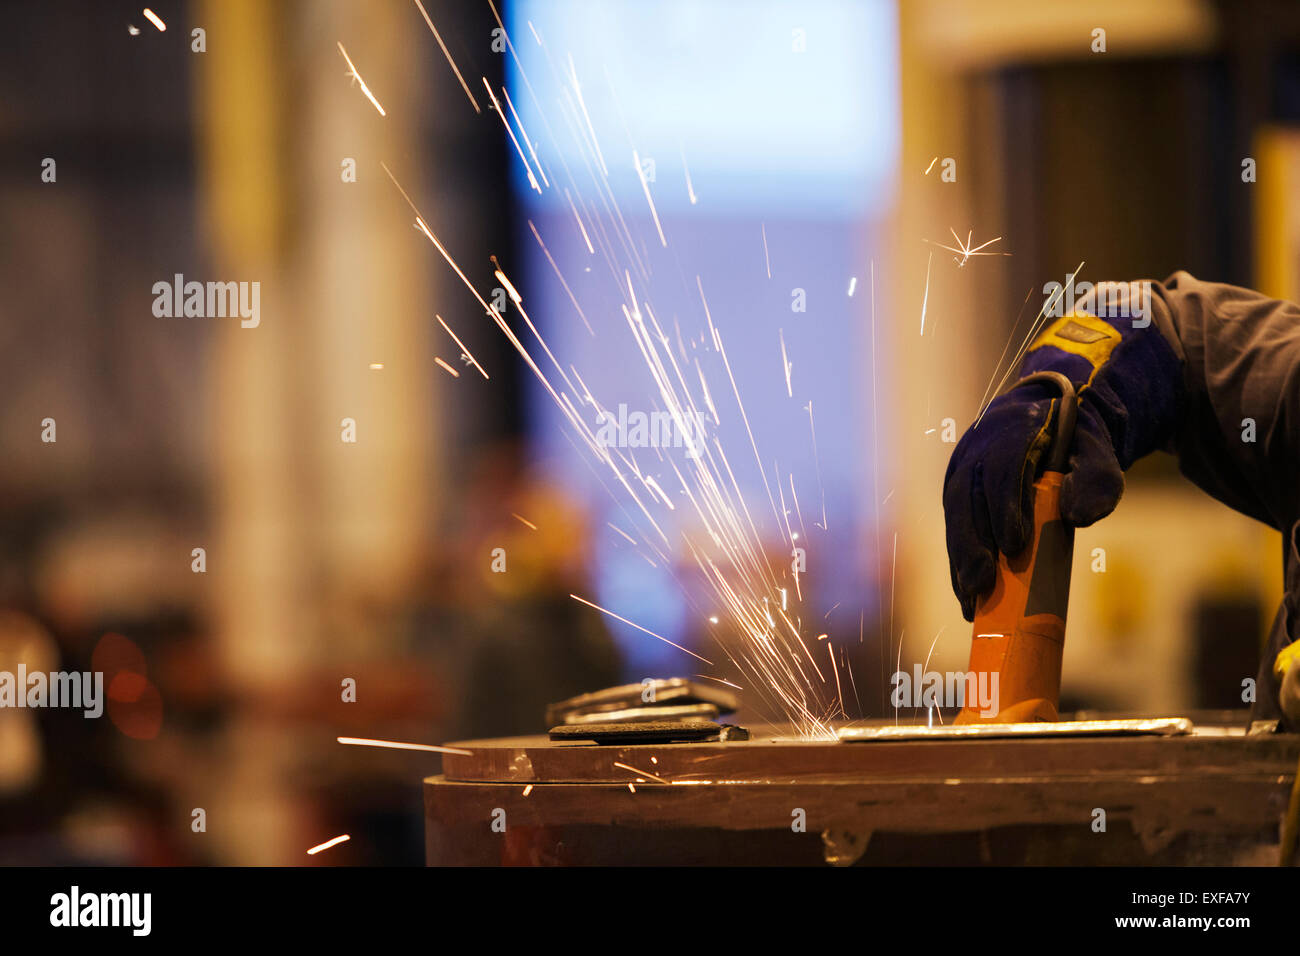 Las chispas de trabajador utilizando una muela abrasiva en la fábrica. Foto de stock